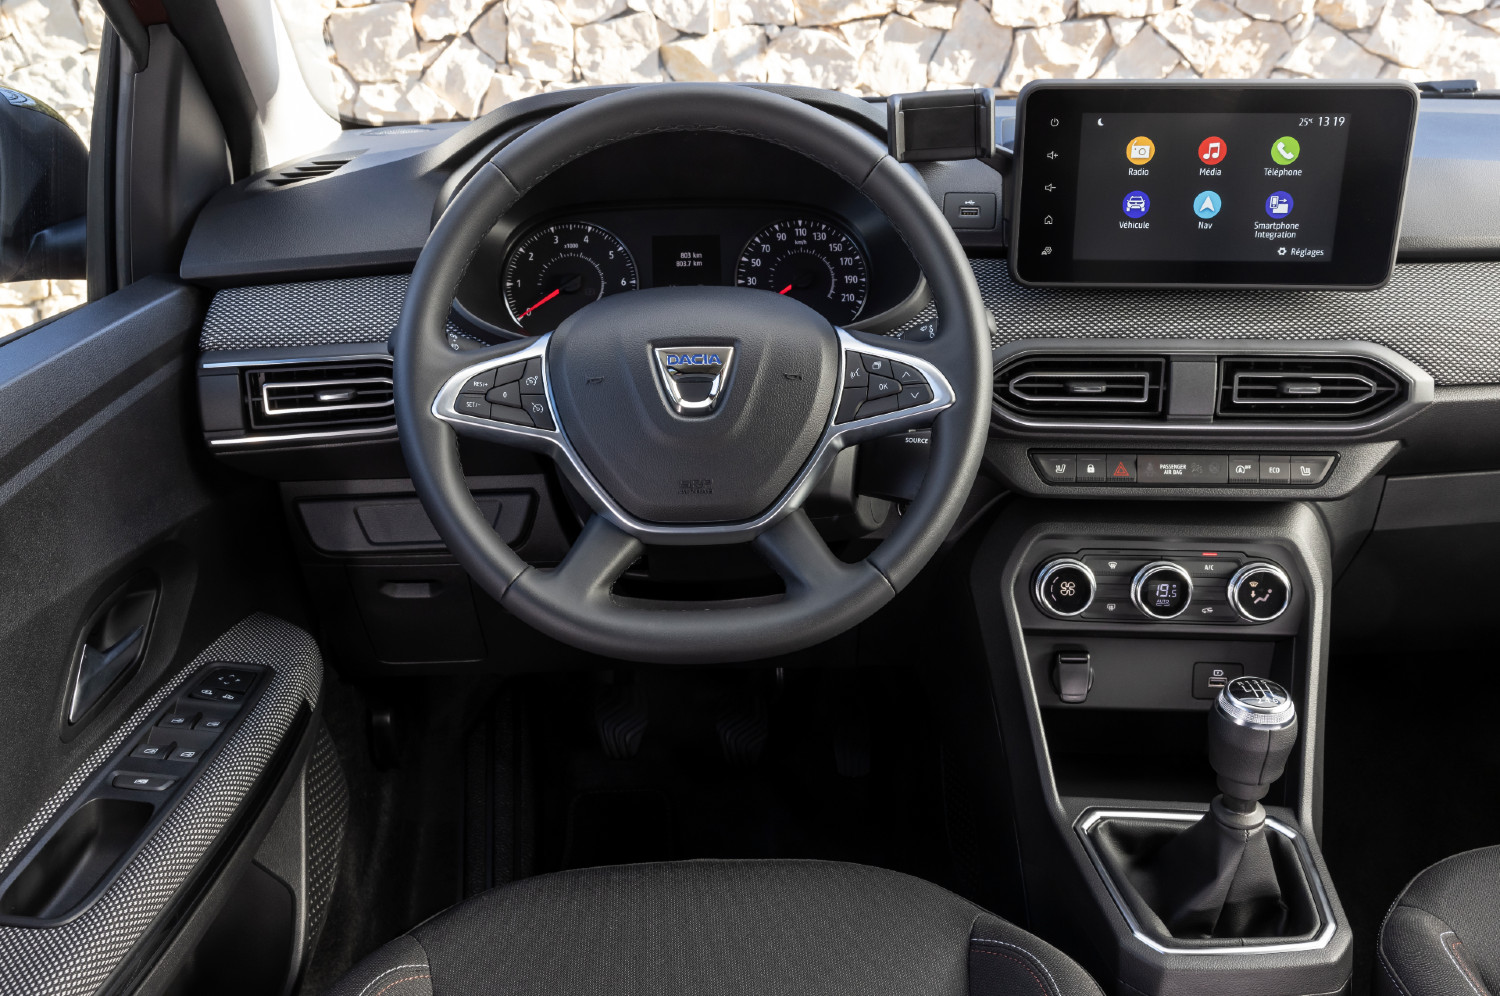 Aqui apresentado na versão SL Extreme, o Dacia Jogger apresenta um ambiente praticamente decalcado do estreado no novo Sandero